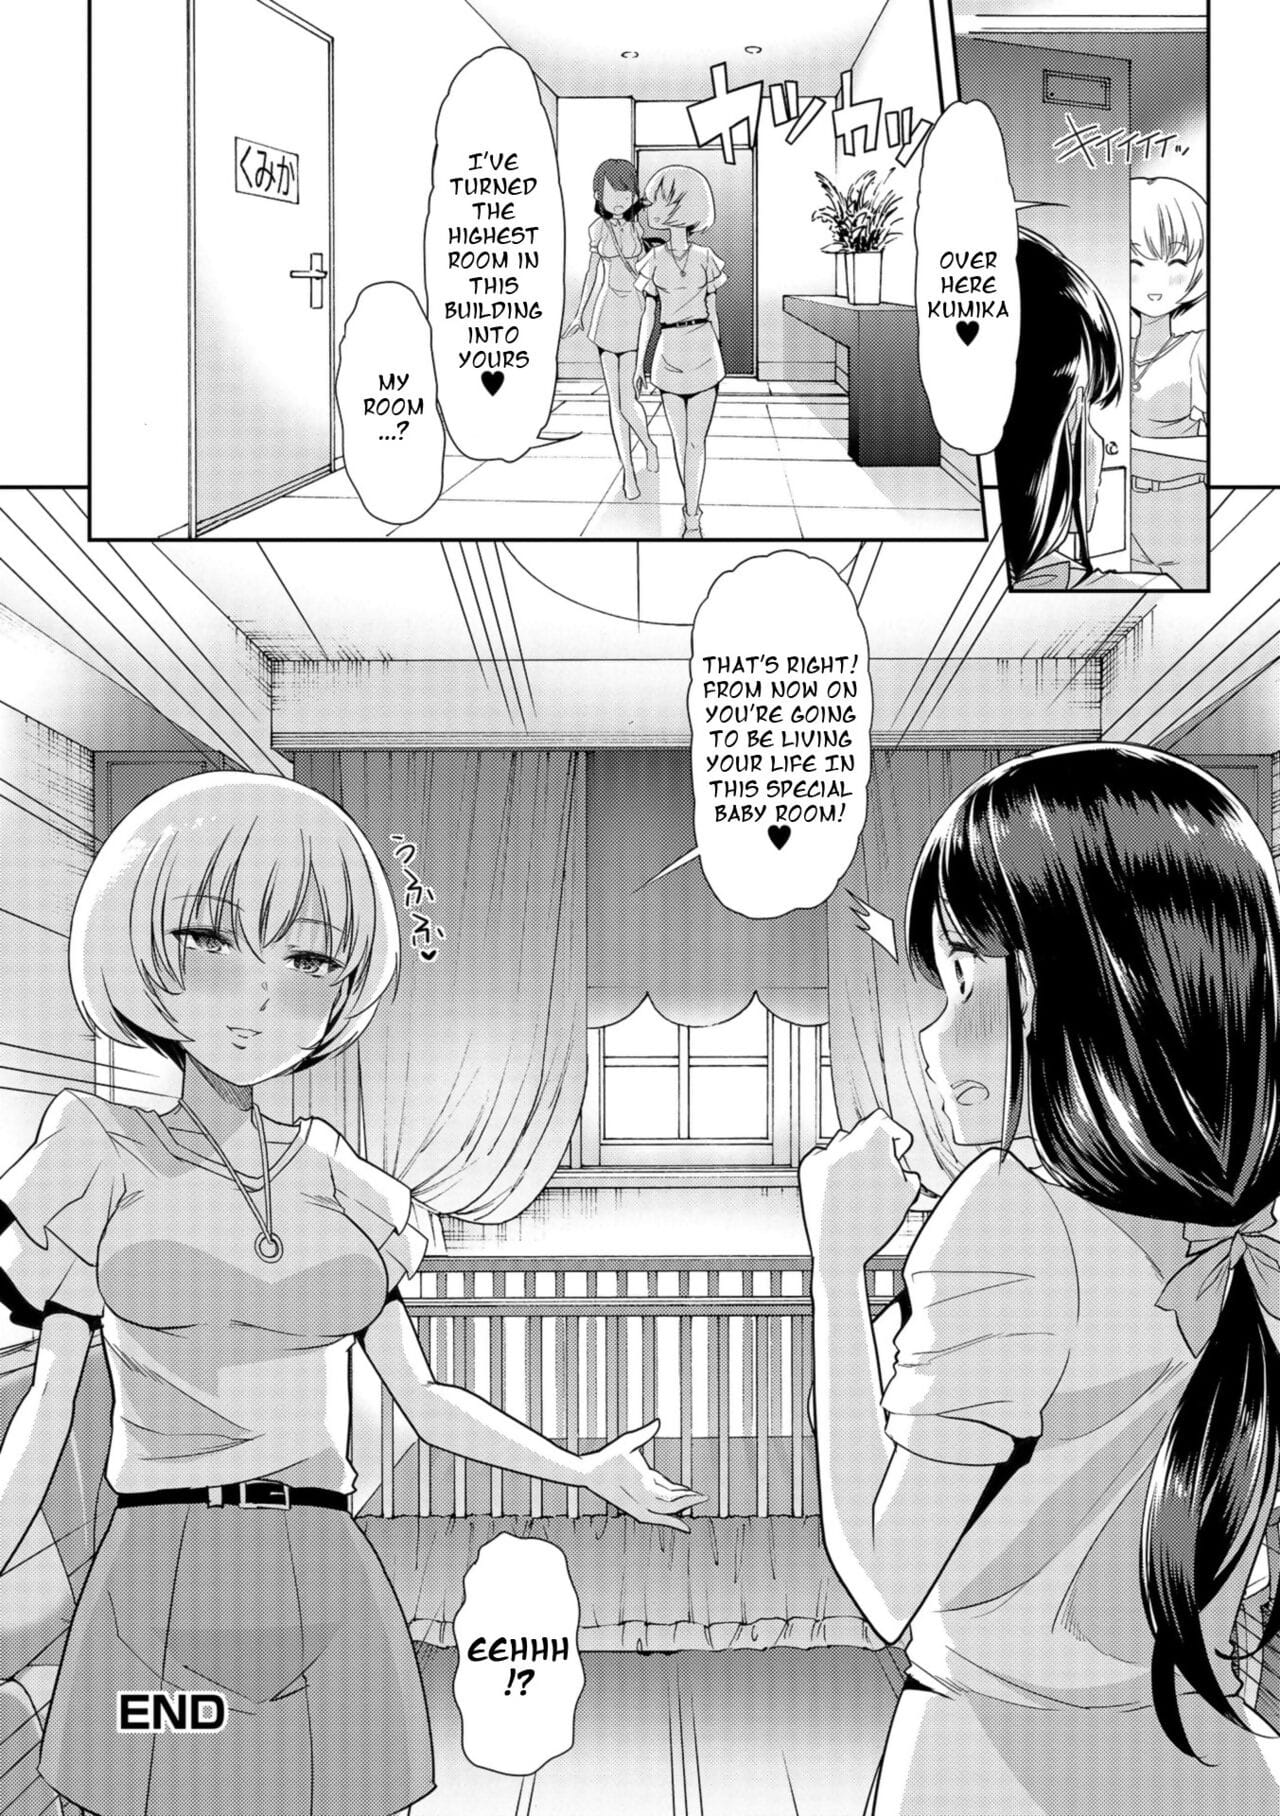 Himitsu no Gyaku Toilet Training 2 page 1